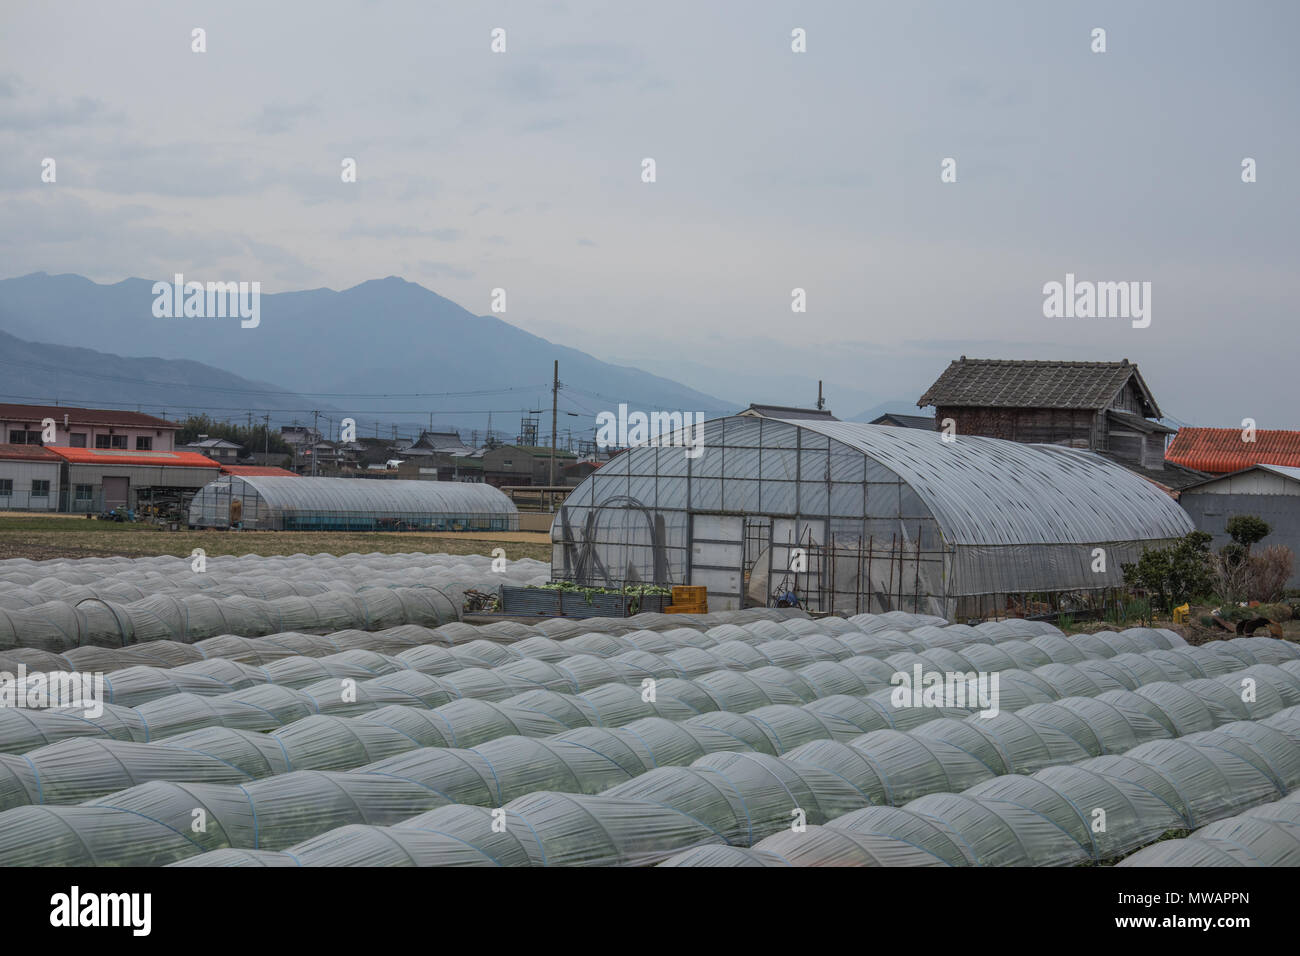 L'horticulture, l'agriculture japonaise contemporaine, un paysage rural typique. L'agriculture industrielle avec tunnel plastique maisons, Tokushima, Shikoku, Japon Banque D'Images